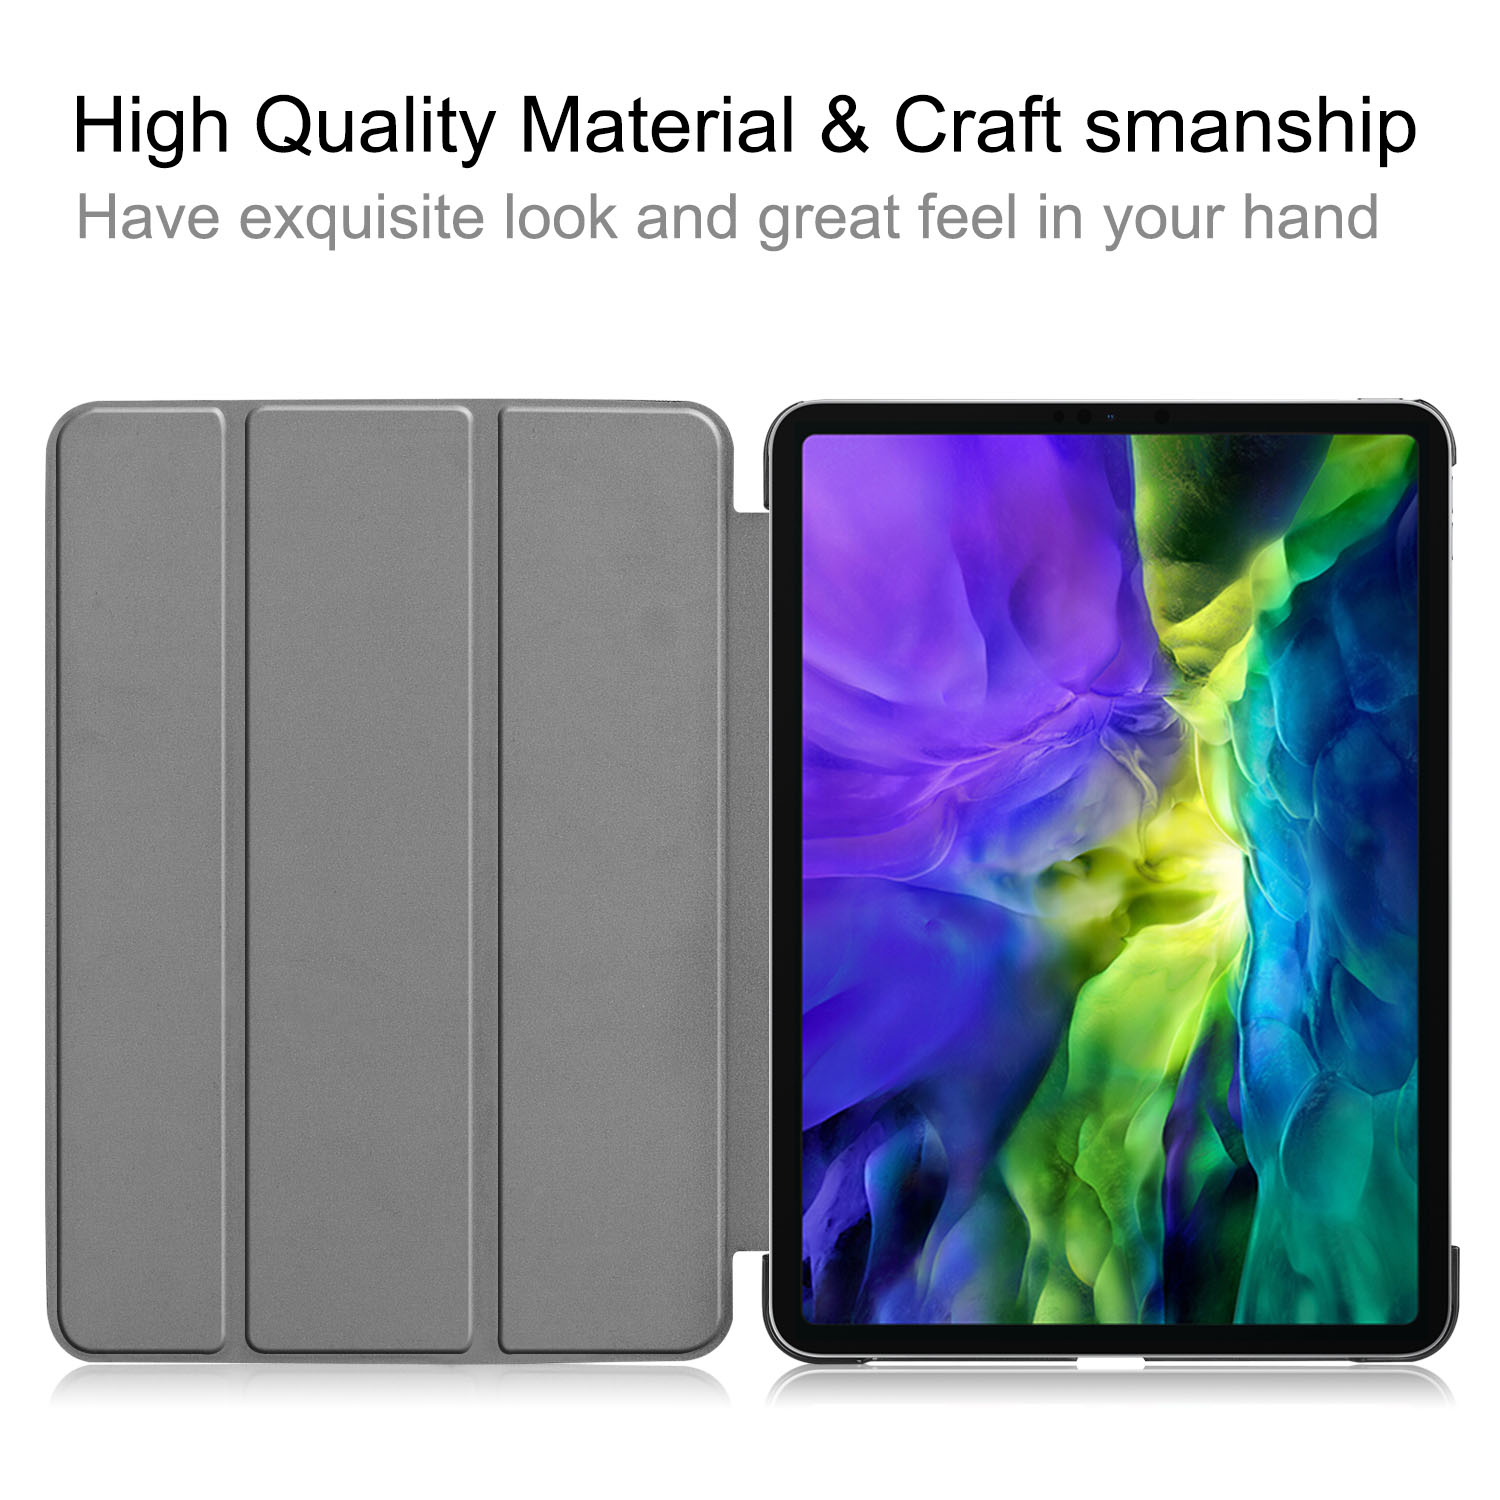 Smart cover/ställ, iPad Pro 11 (2020), svart